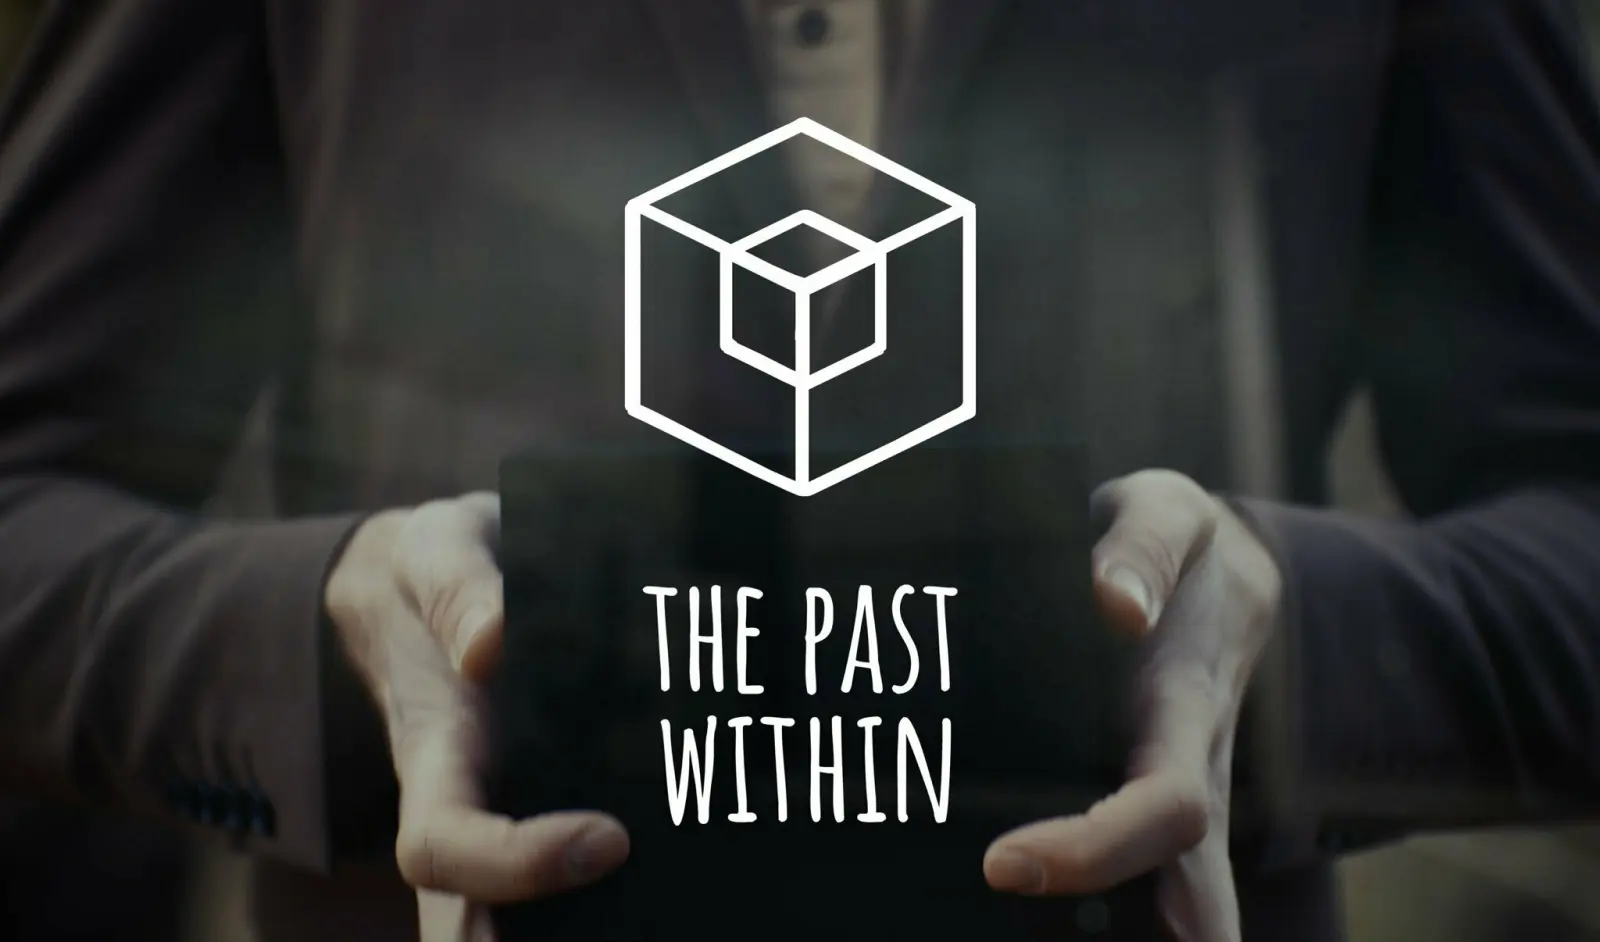 锈湖系列作品《The Past Within》即将推出VR版